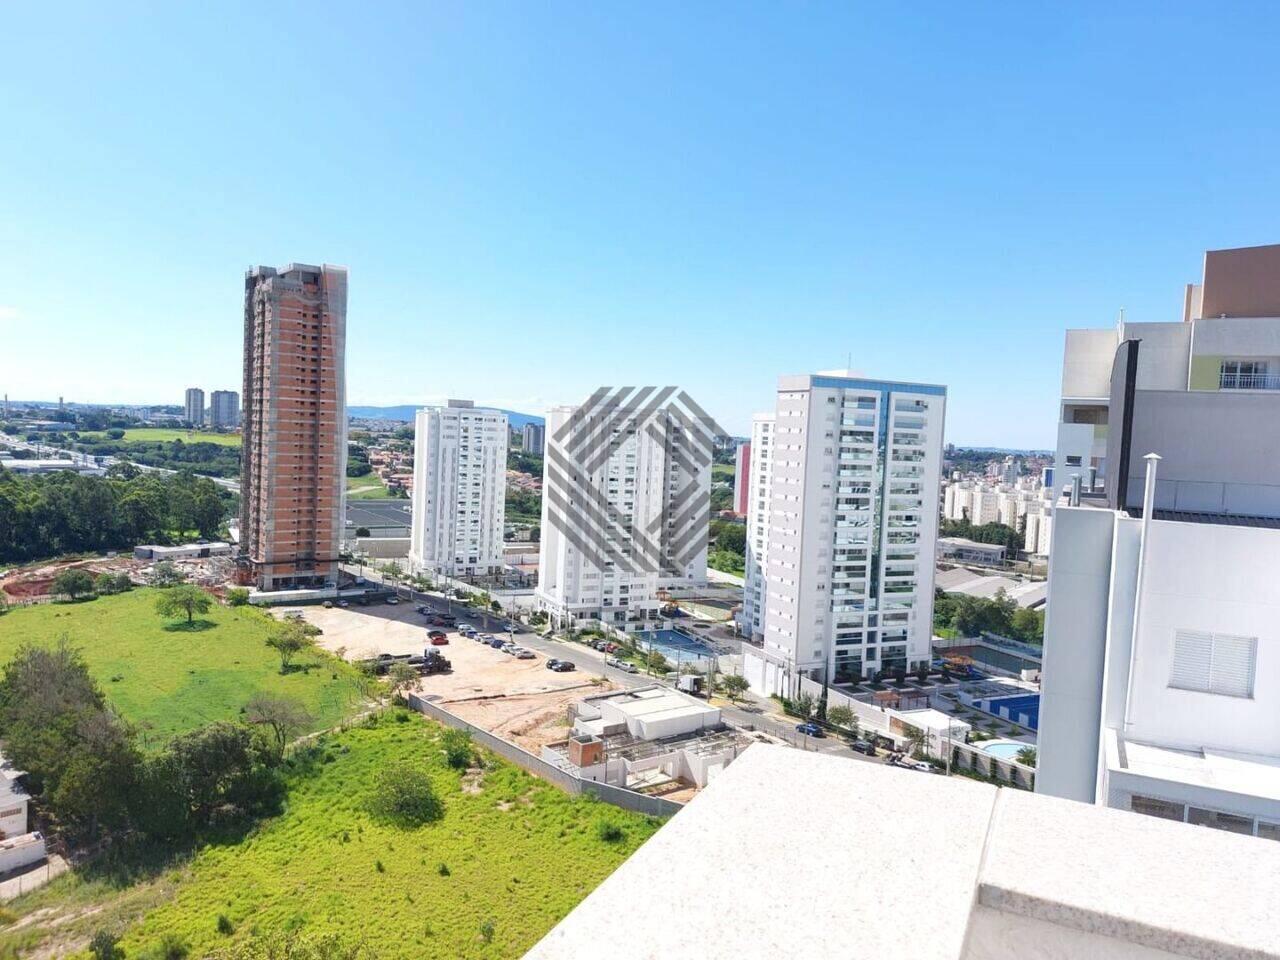 Apartamento duplex Parque Campolim, Sorocaba - SP